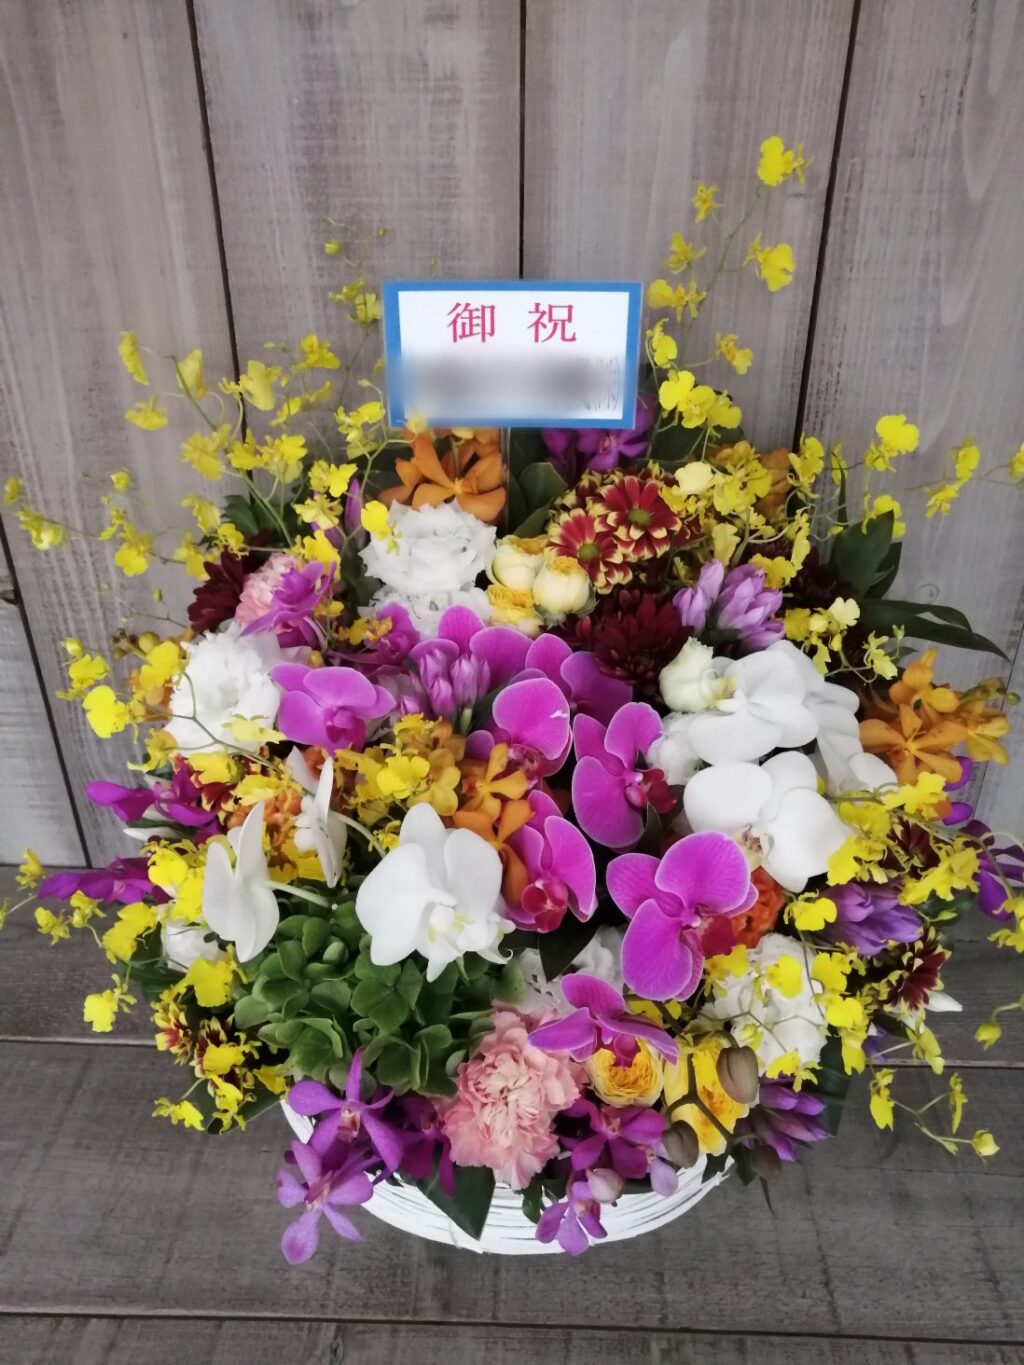 豊川市にお届けした事務所開設御祝いの花